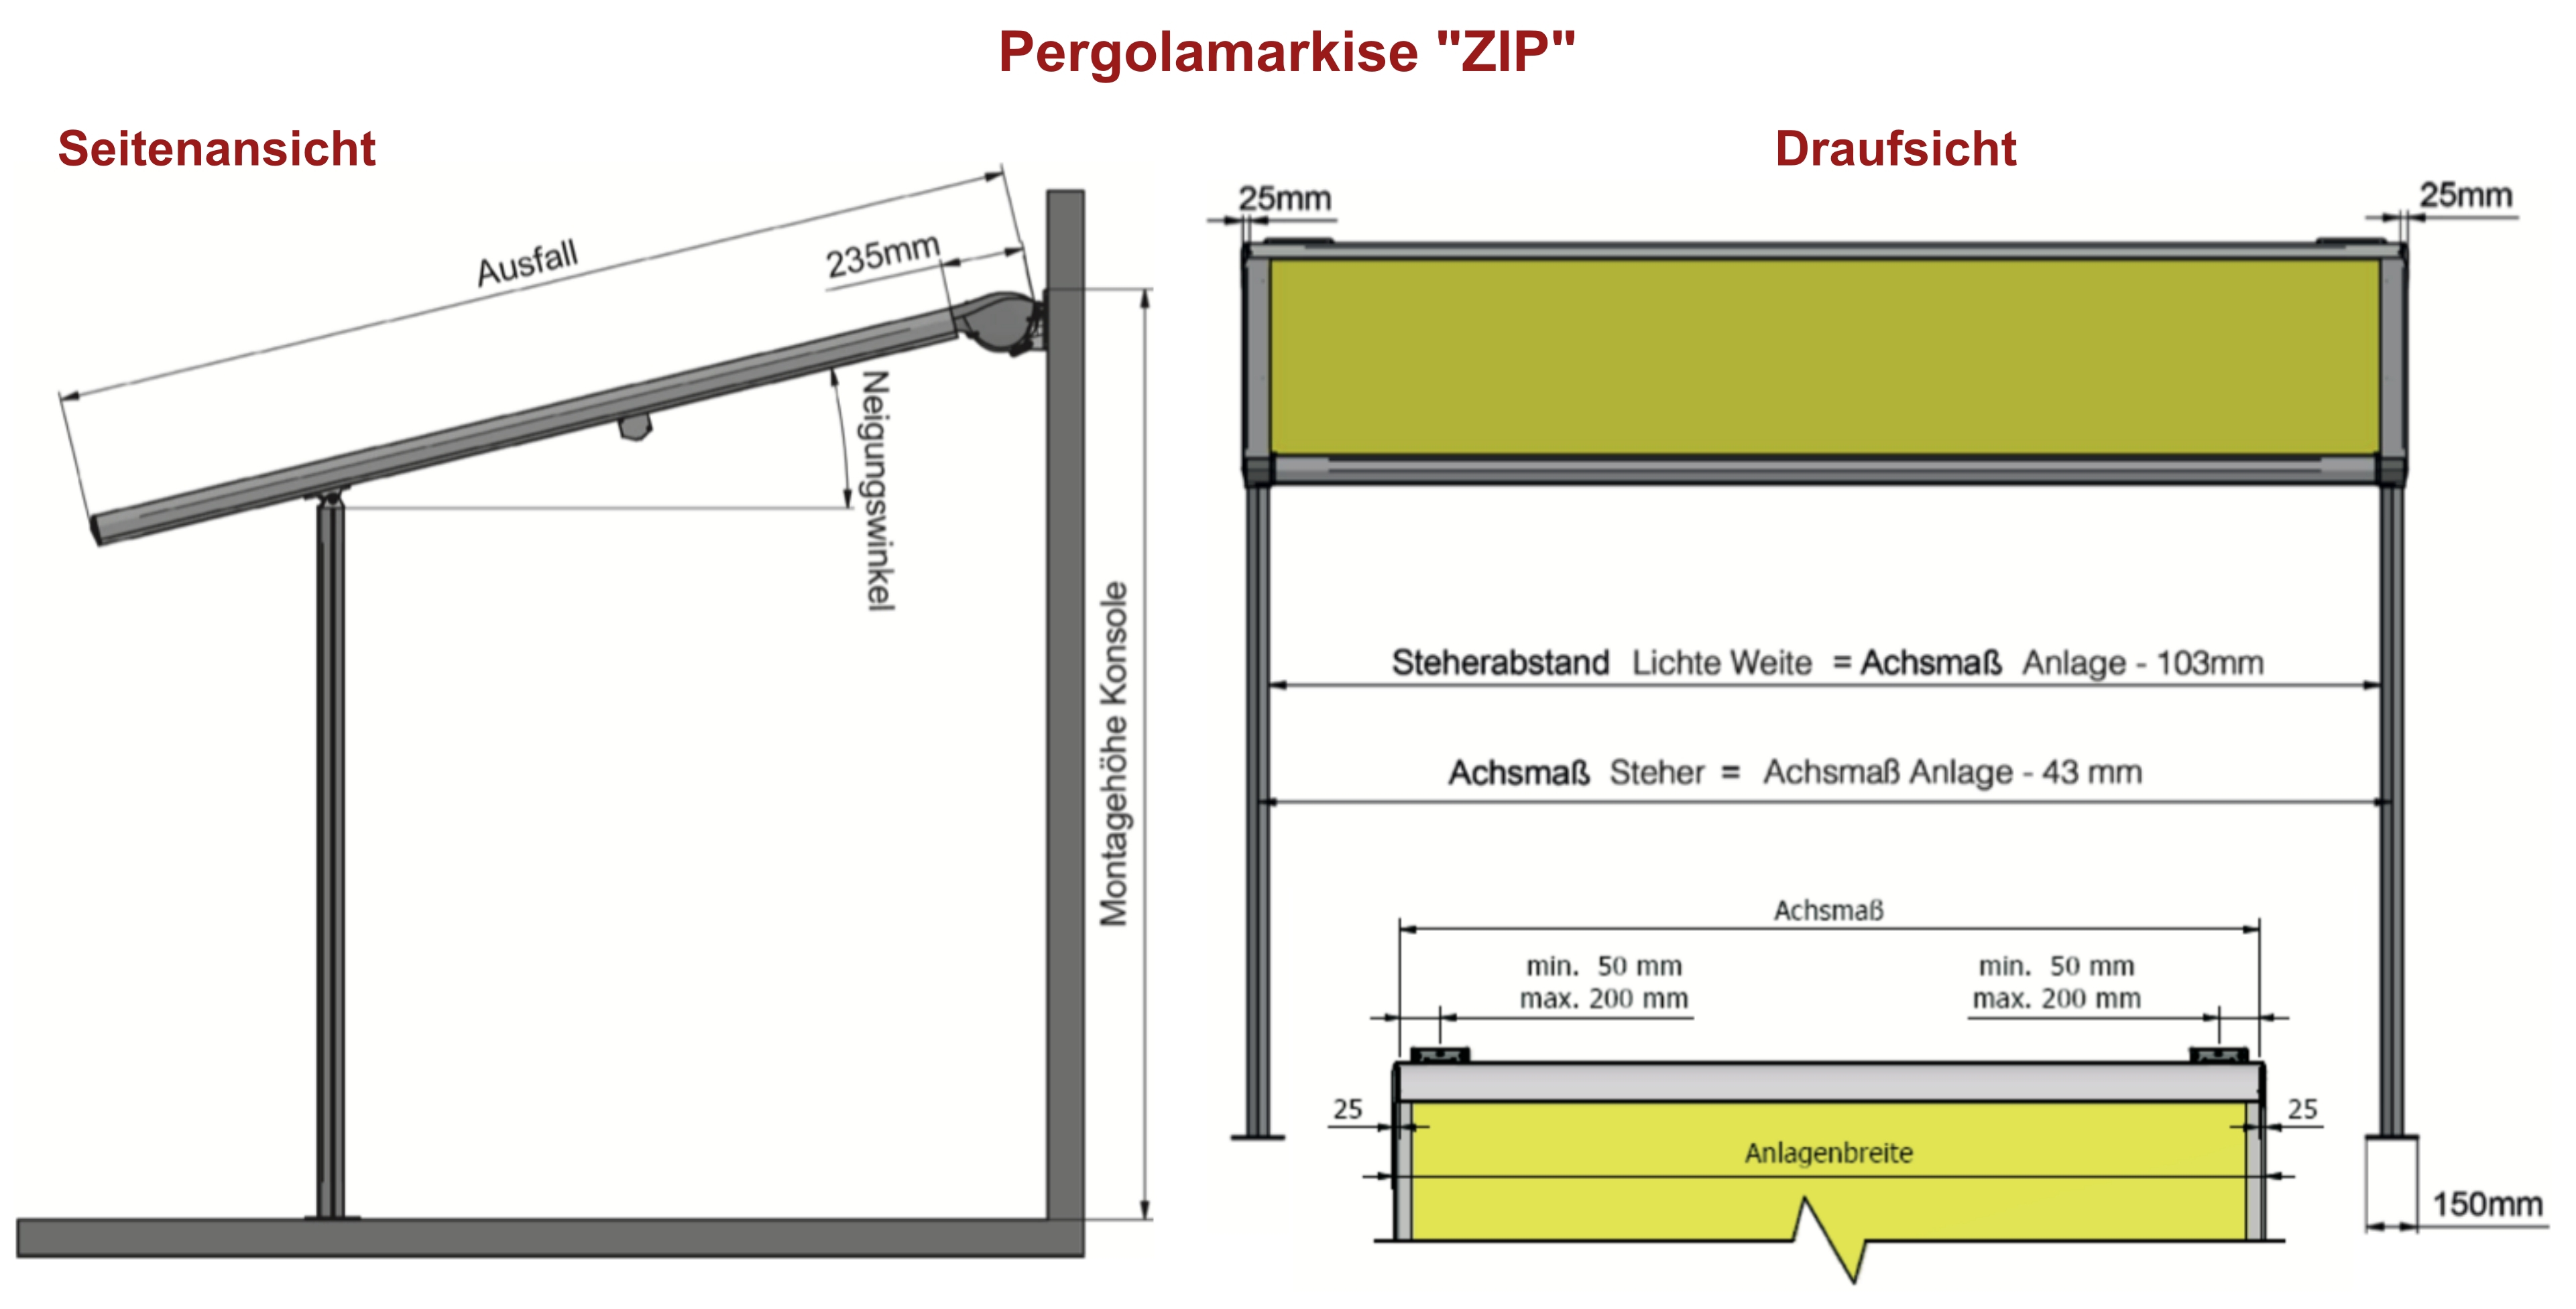 Achsmass_apto_Zeichnung_draufsicht_zip_pergola_markise_made_in_germany12